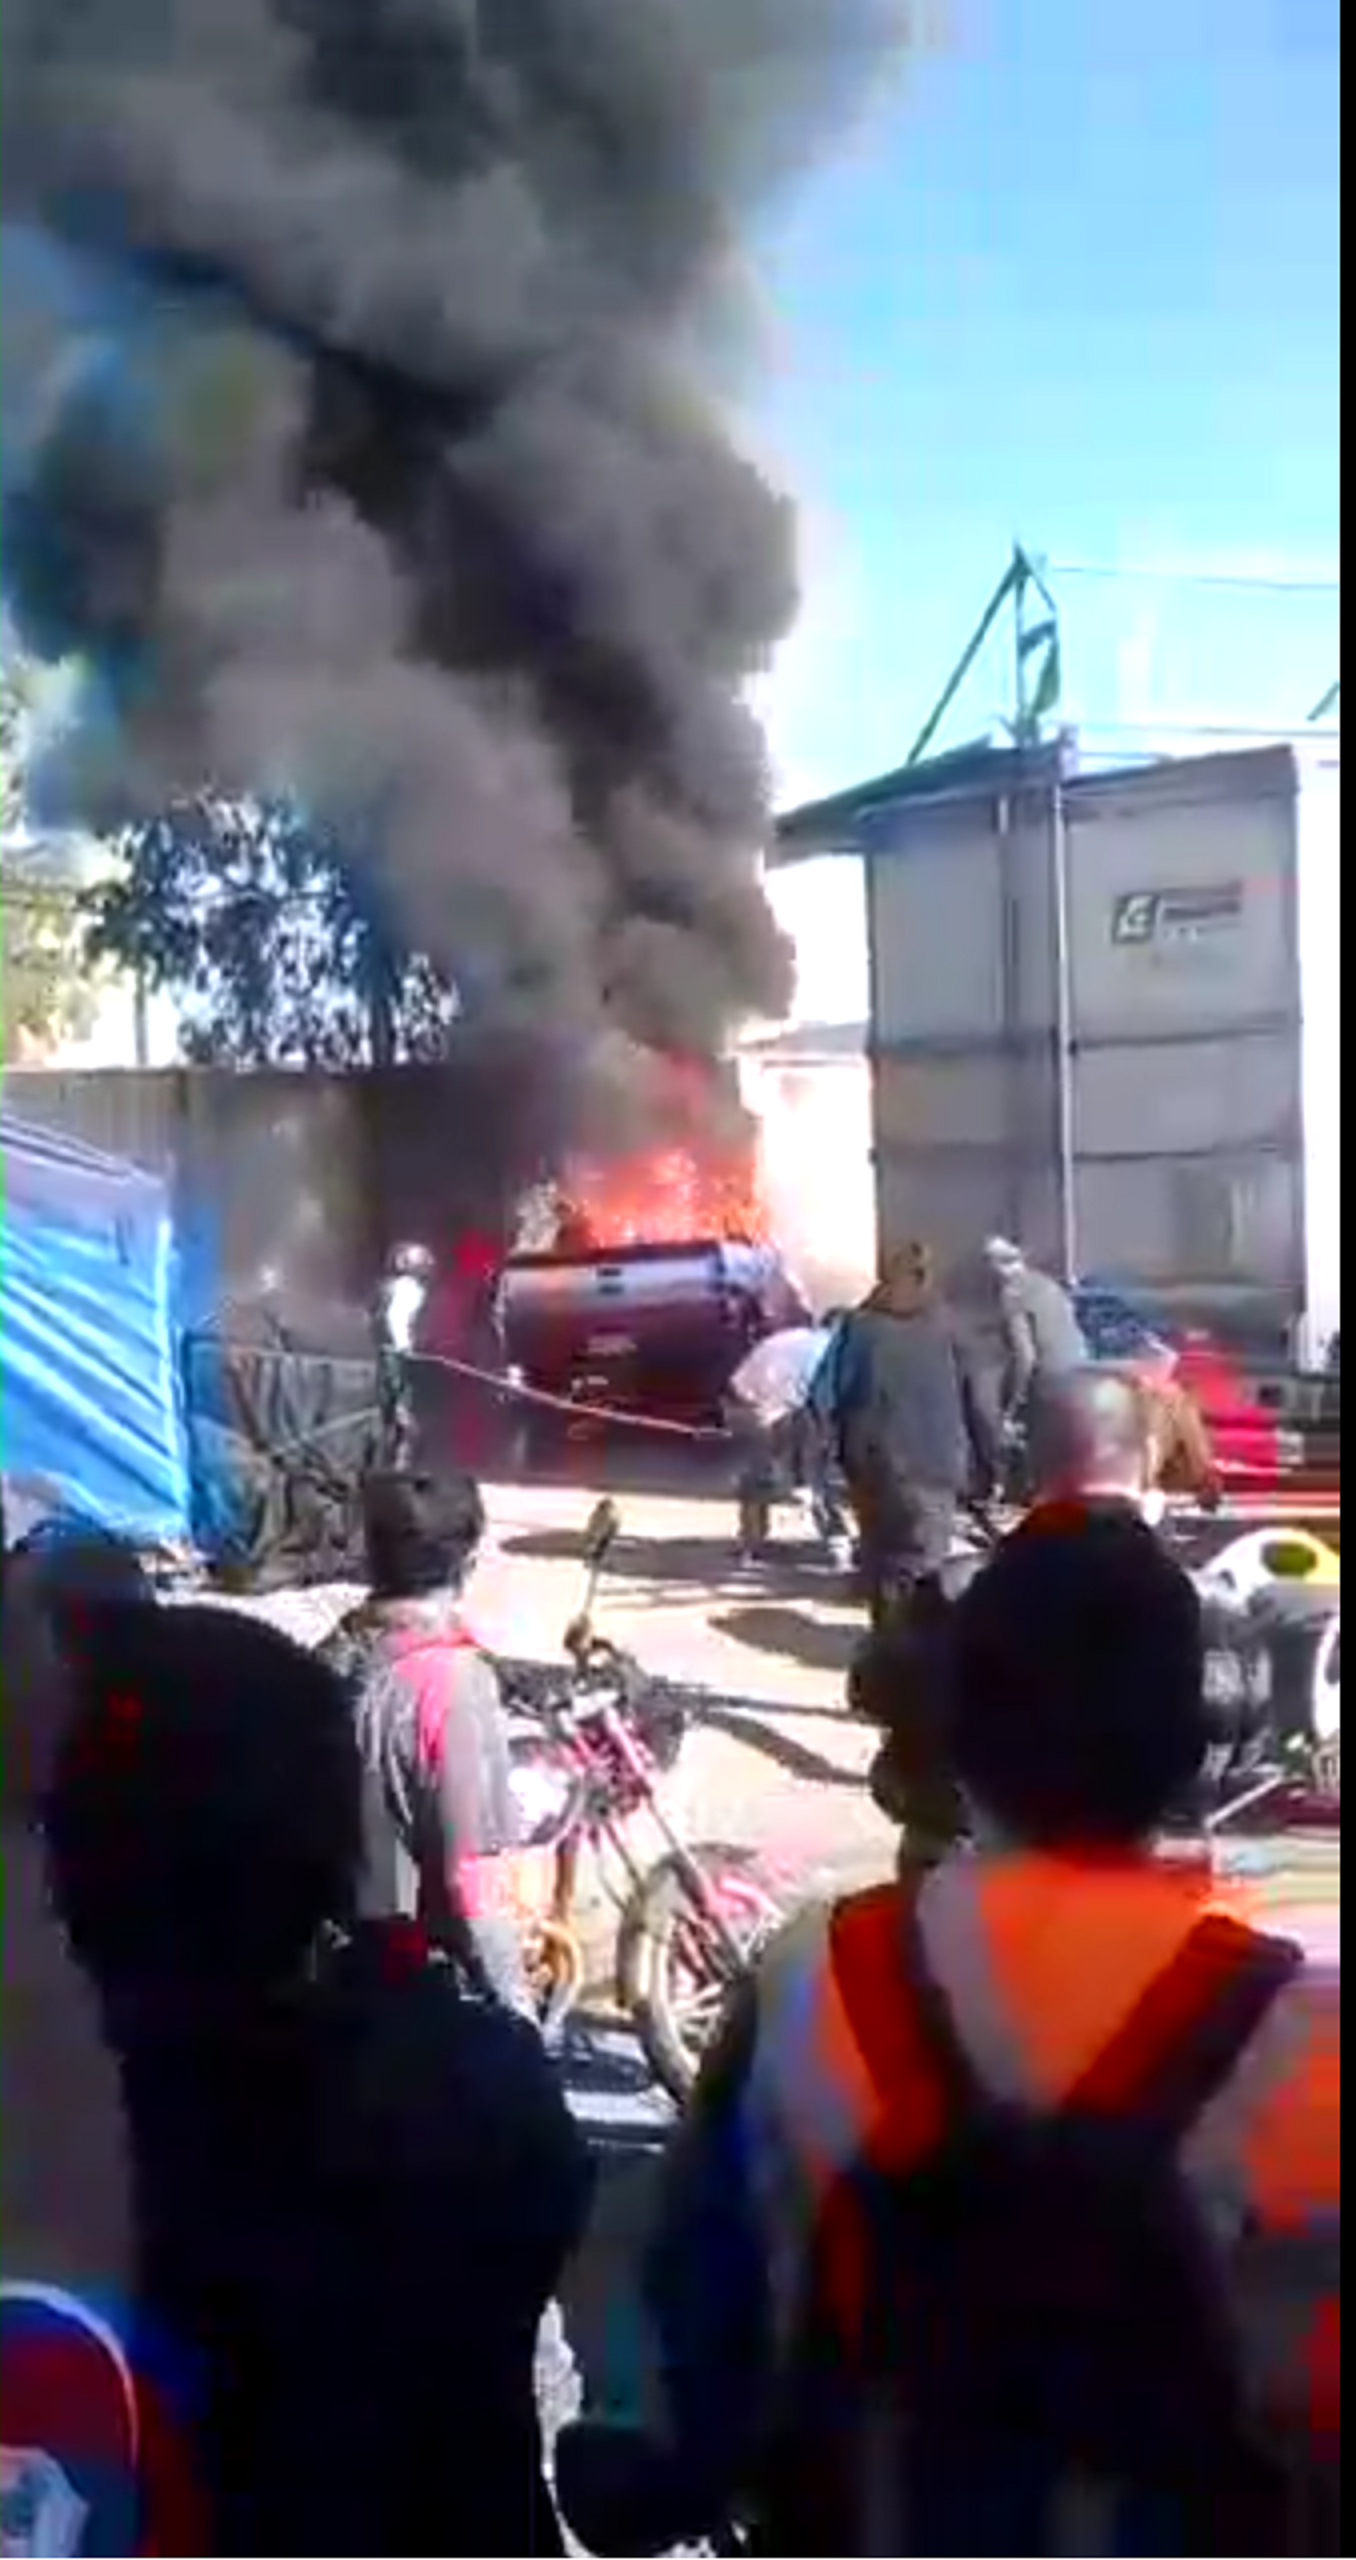 Cenizas o recalentamiento eléctrico, habría gatillado incendio de Camioneta  en la Macrofería en Talca